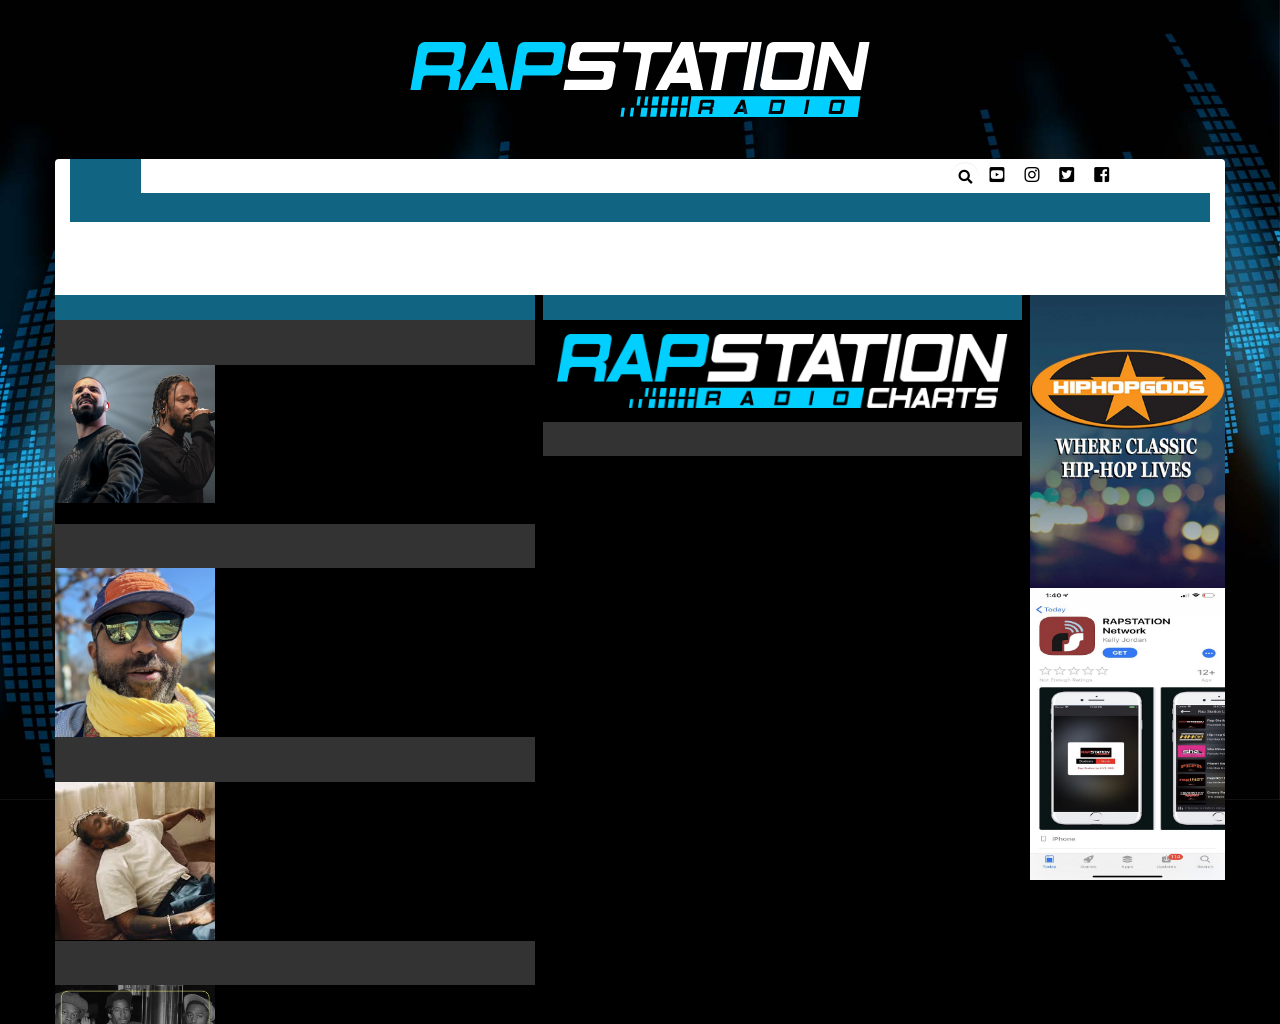 rapstation.com